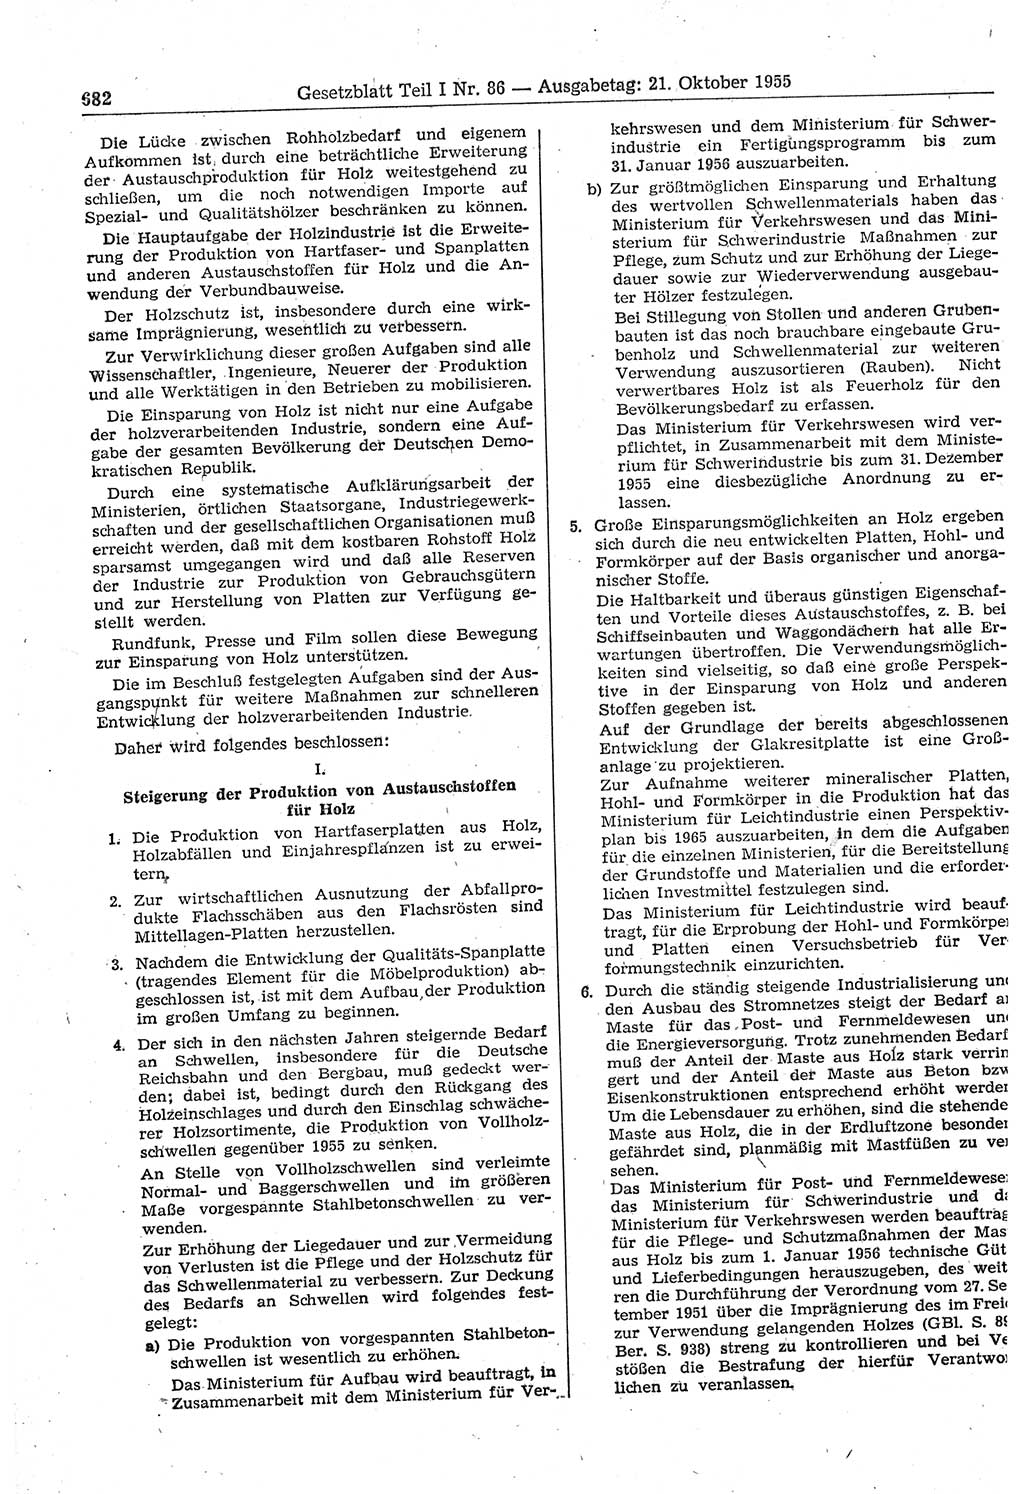 Gesetzblatt (GBl.) der Deutschen Demokratischen Republik (DDR) Teil Ⅰ 1955, Seite 682 (GBl. DDR Ⅰ 1955, S. 682)